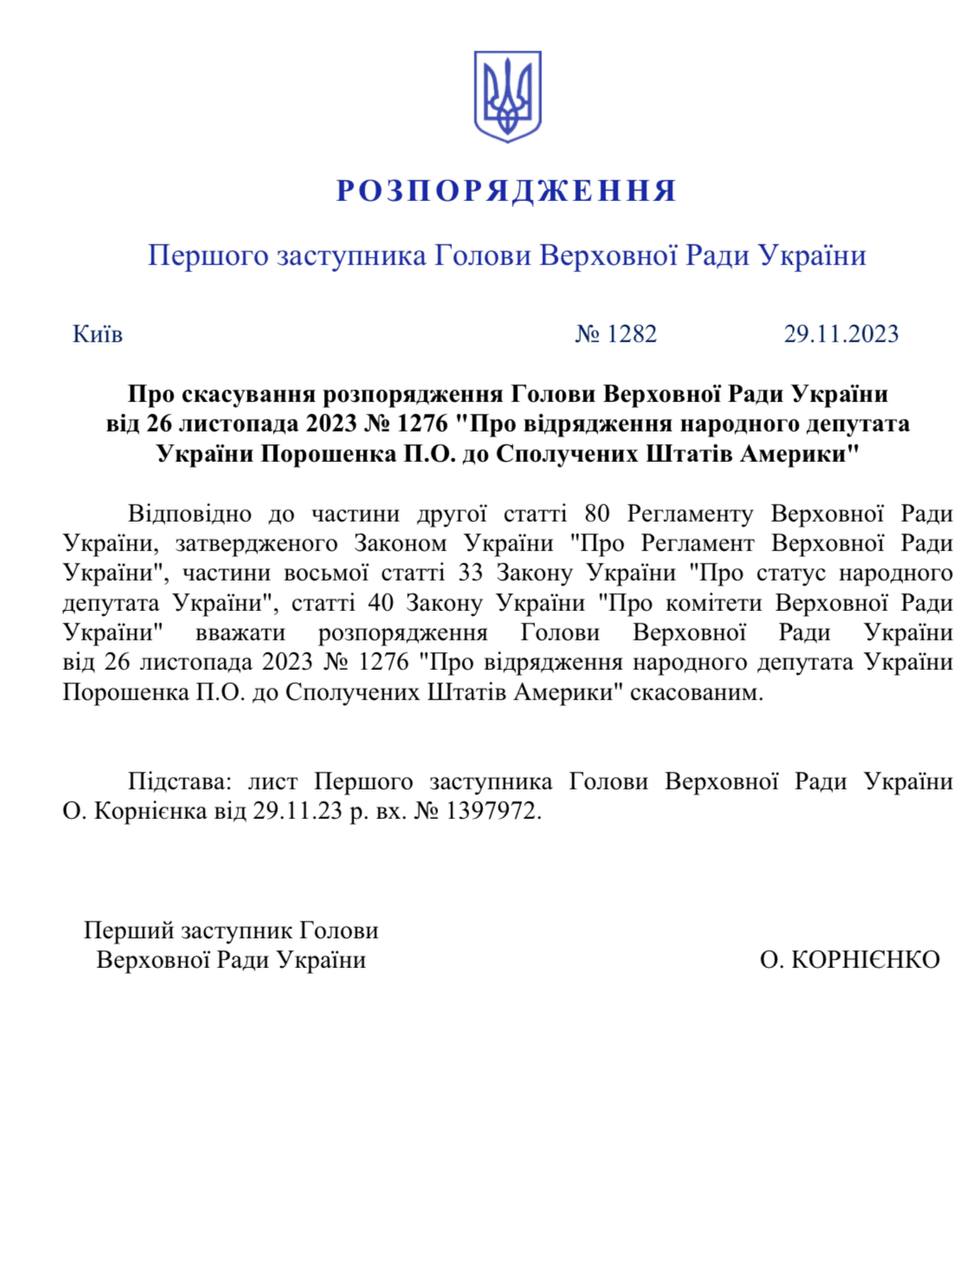 Фото распоряжения об отмене разрешения Порошенко на выезд за границу